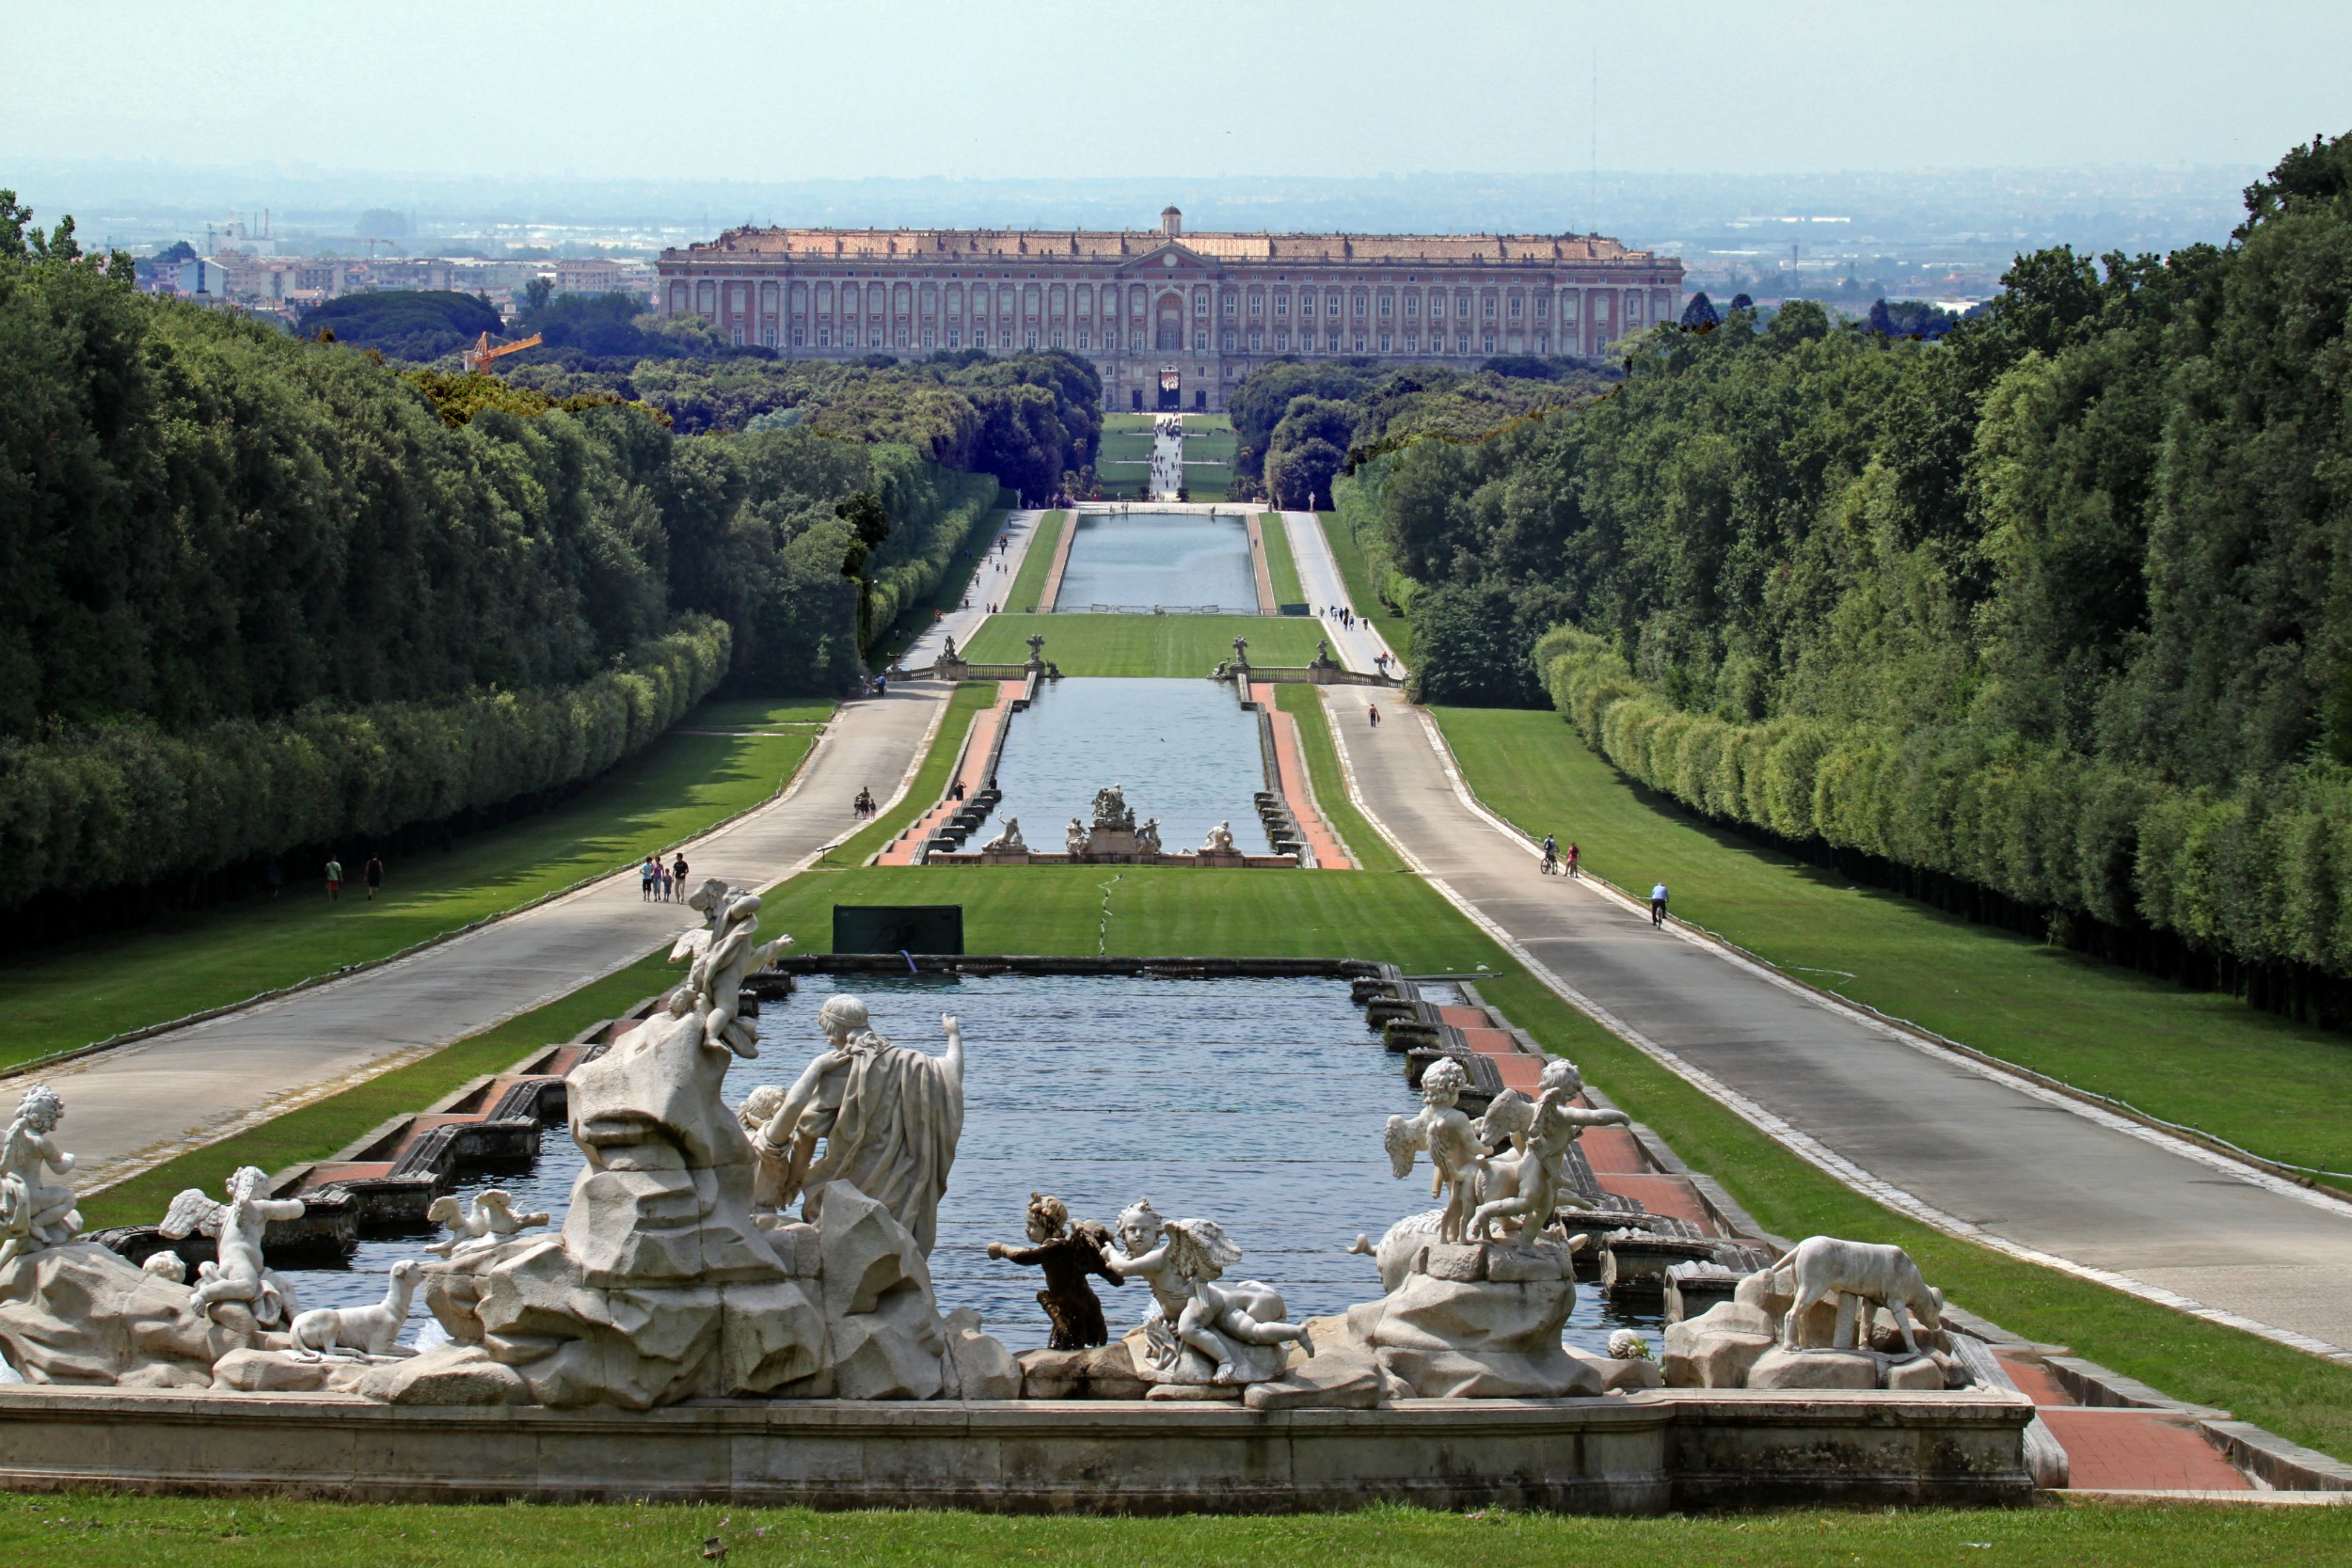 Caserta's Royal Palace